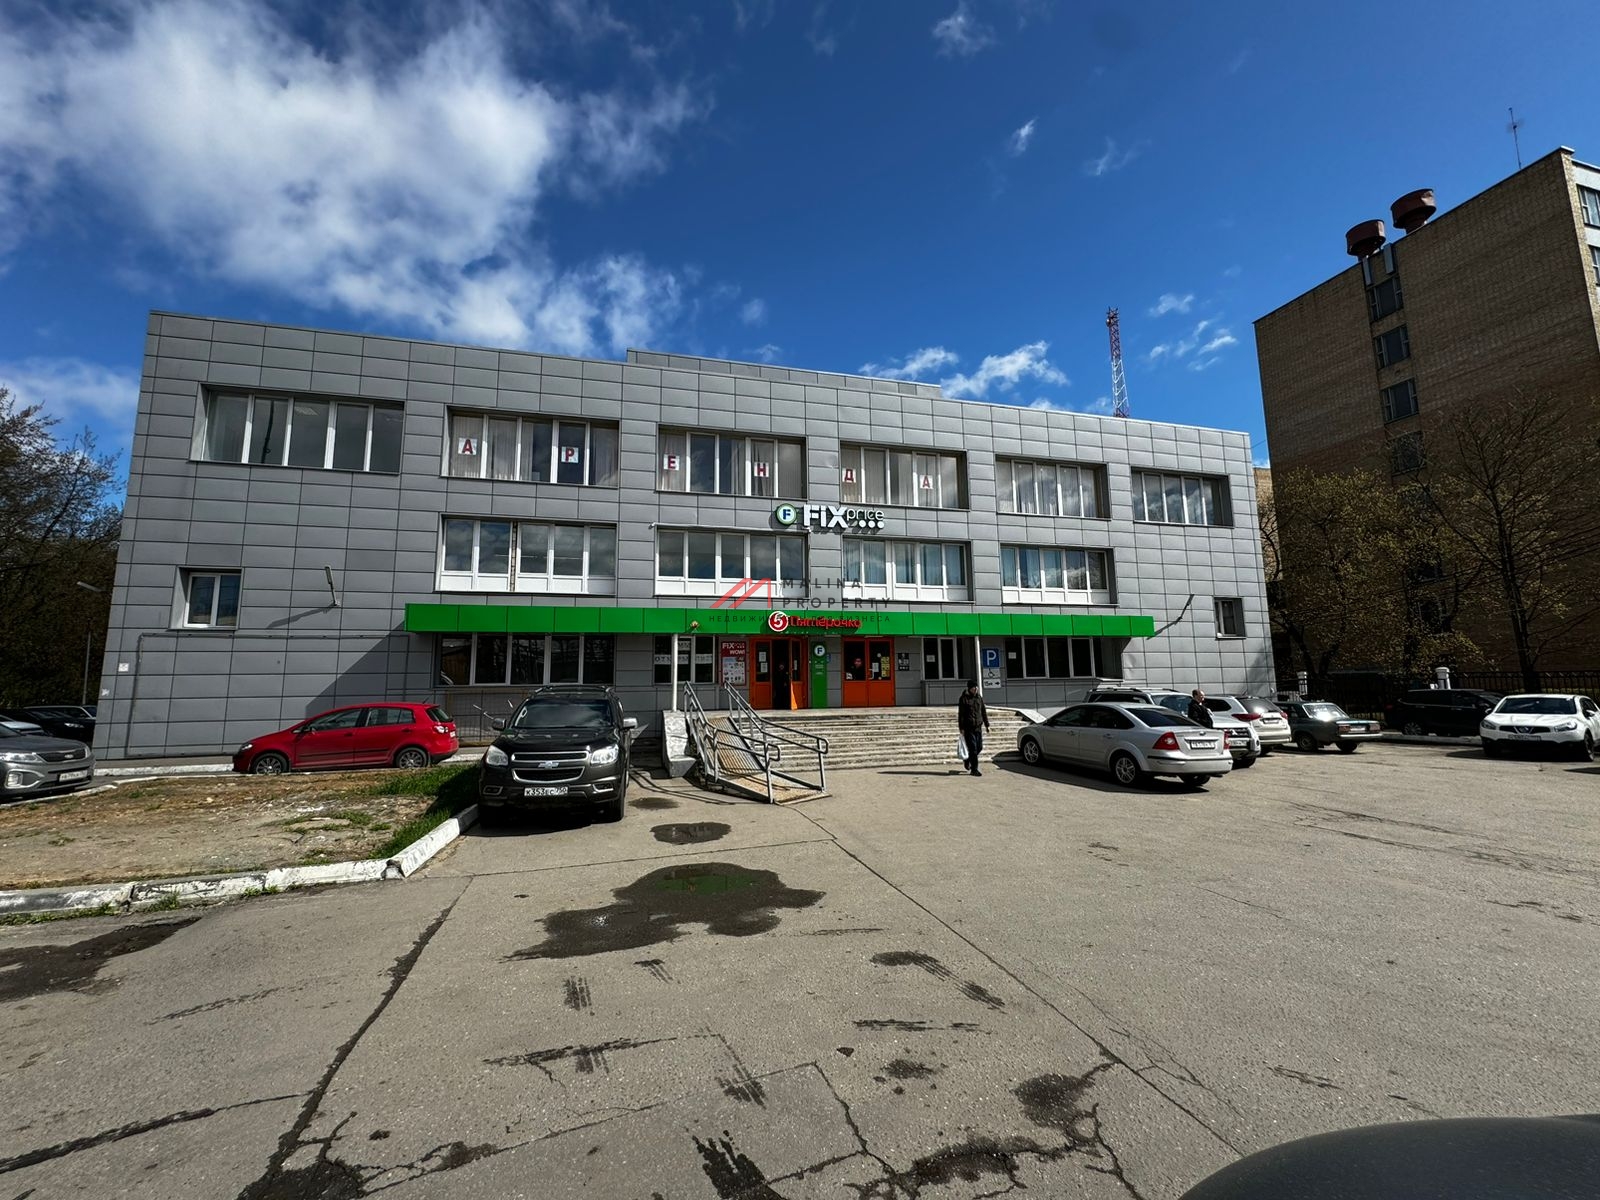 Продажа здания с сетевыми арендаторами в Подольске